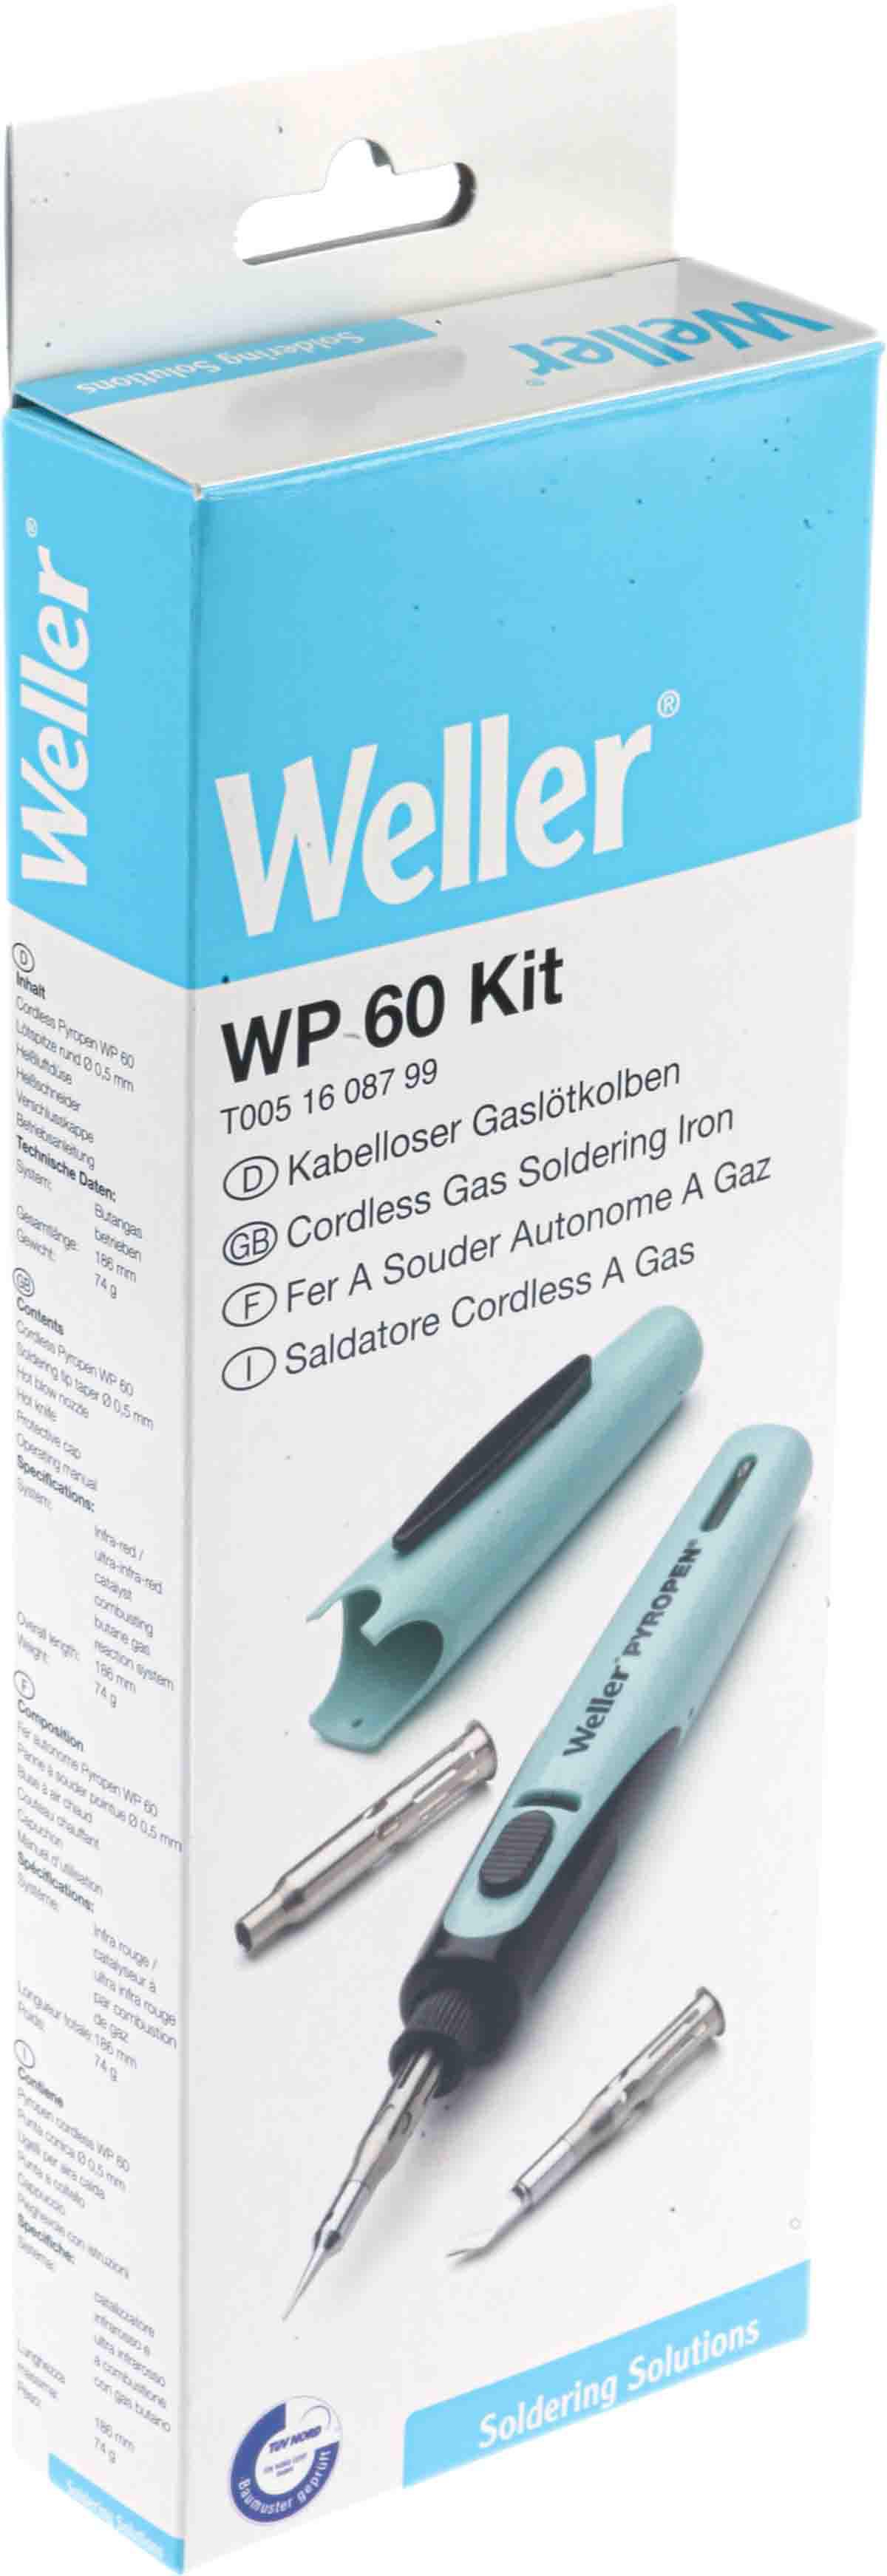 Weller | T0051608799 | ET14118702 | Gas Soldering Iron Kit, WP60K Model | Soldering Irons | Enrgtech LTD